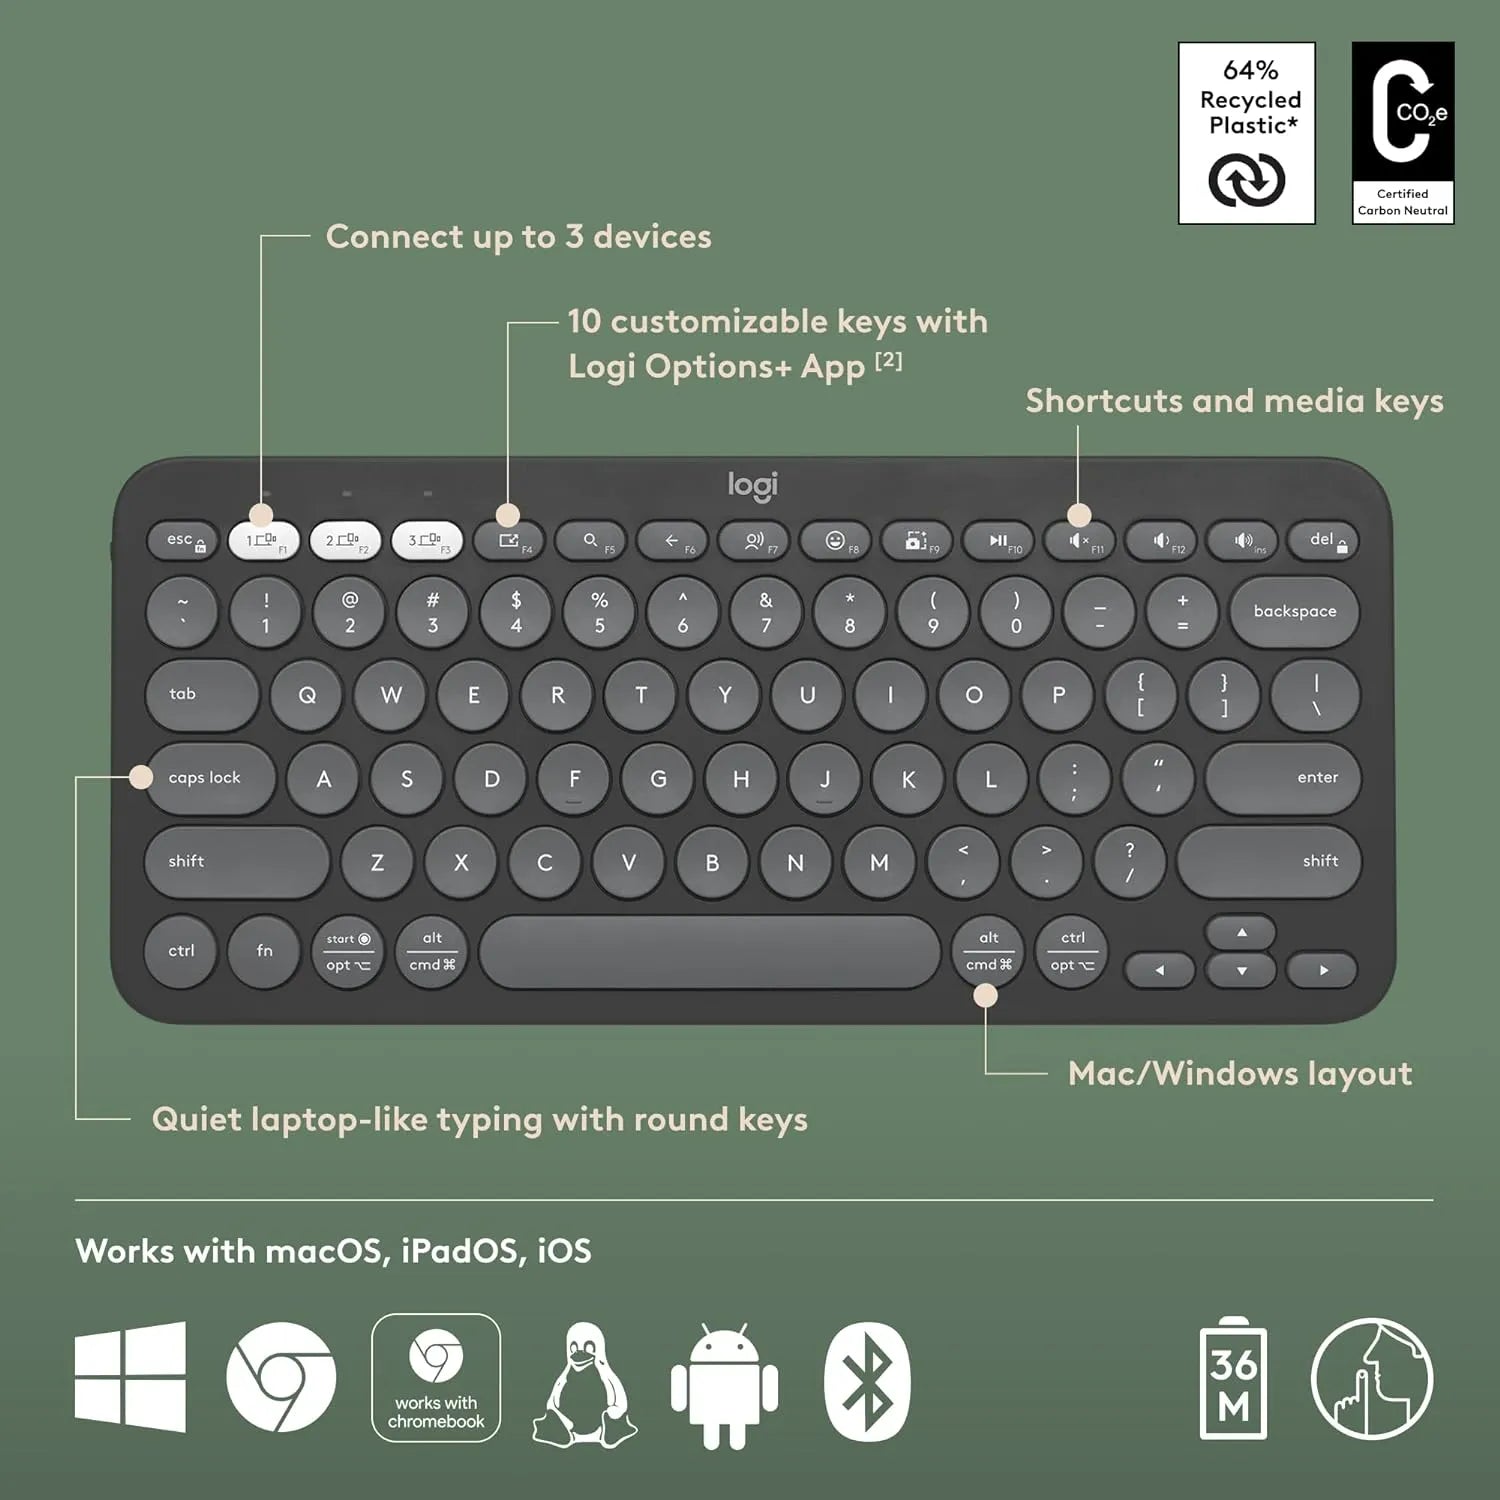 Logitech Pebble Keys 2 K380s Bluetooth Keyboard with customizable keys